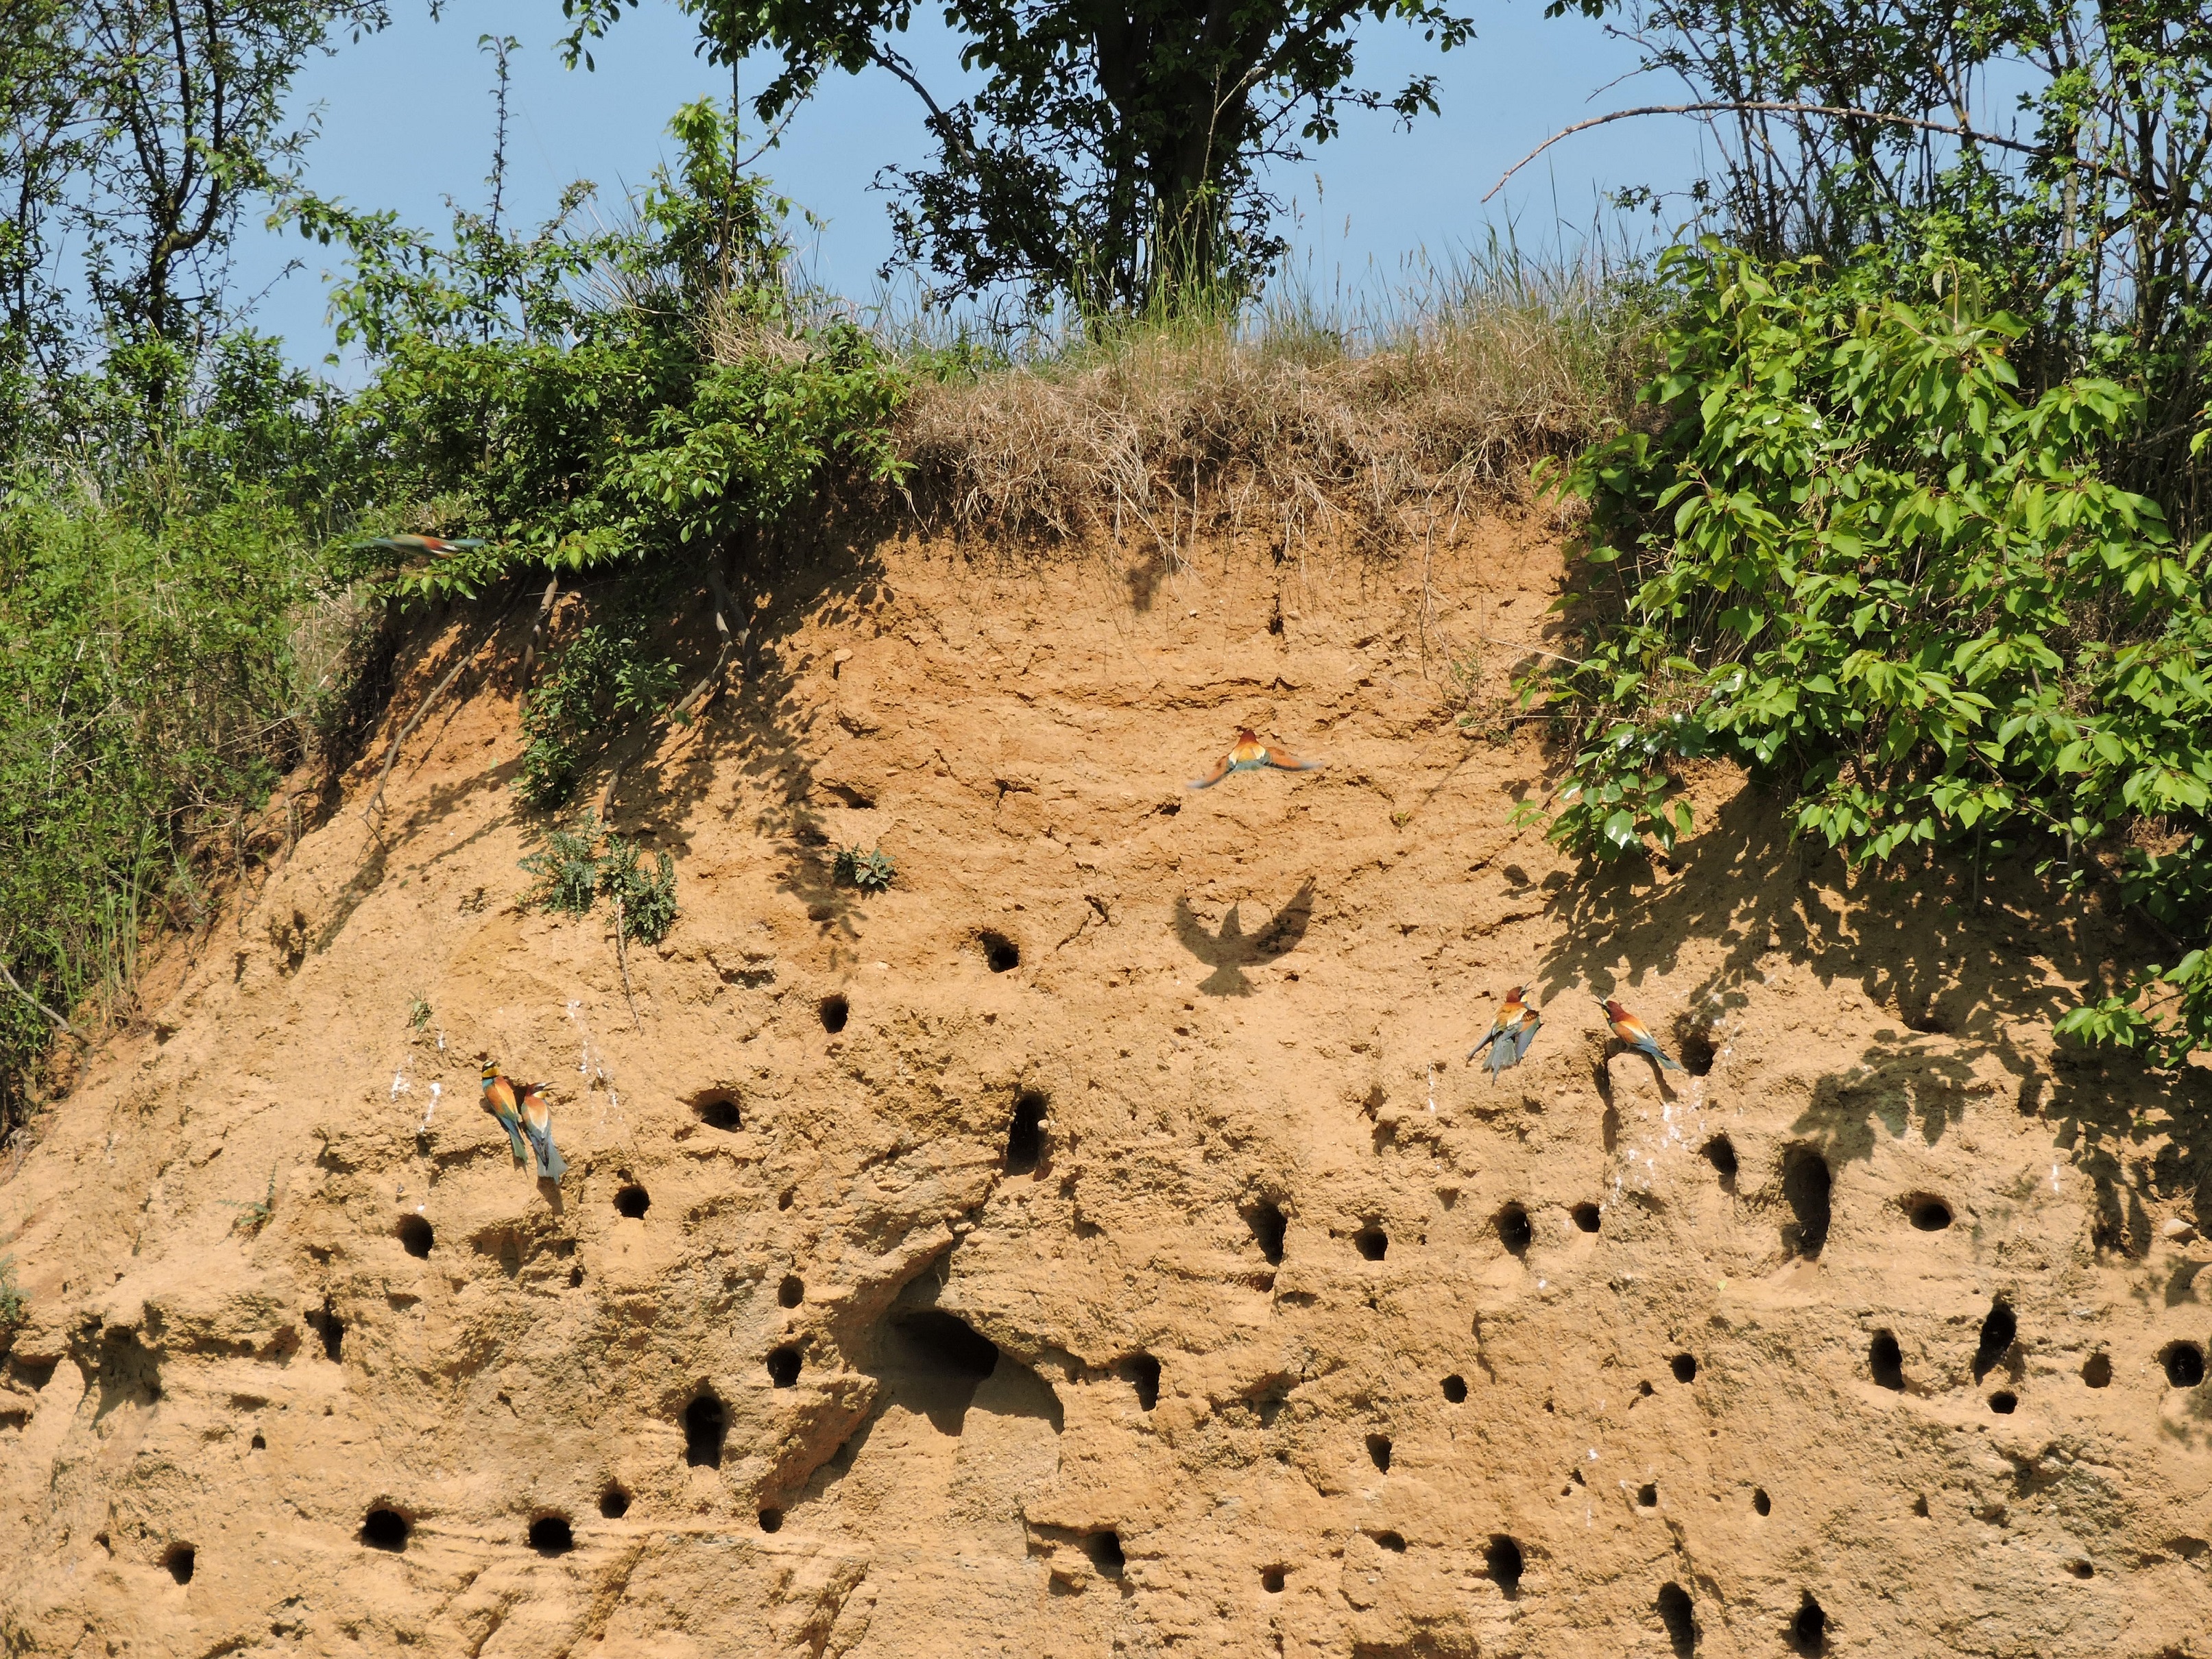 Nejmenší ptačí park ČSO - pískovna Malá Lipová hostí koloniálně hnízdící vlhy pestré (na obr.) a břehule říční. Foto: Eliška Valinová